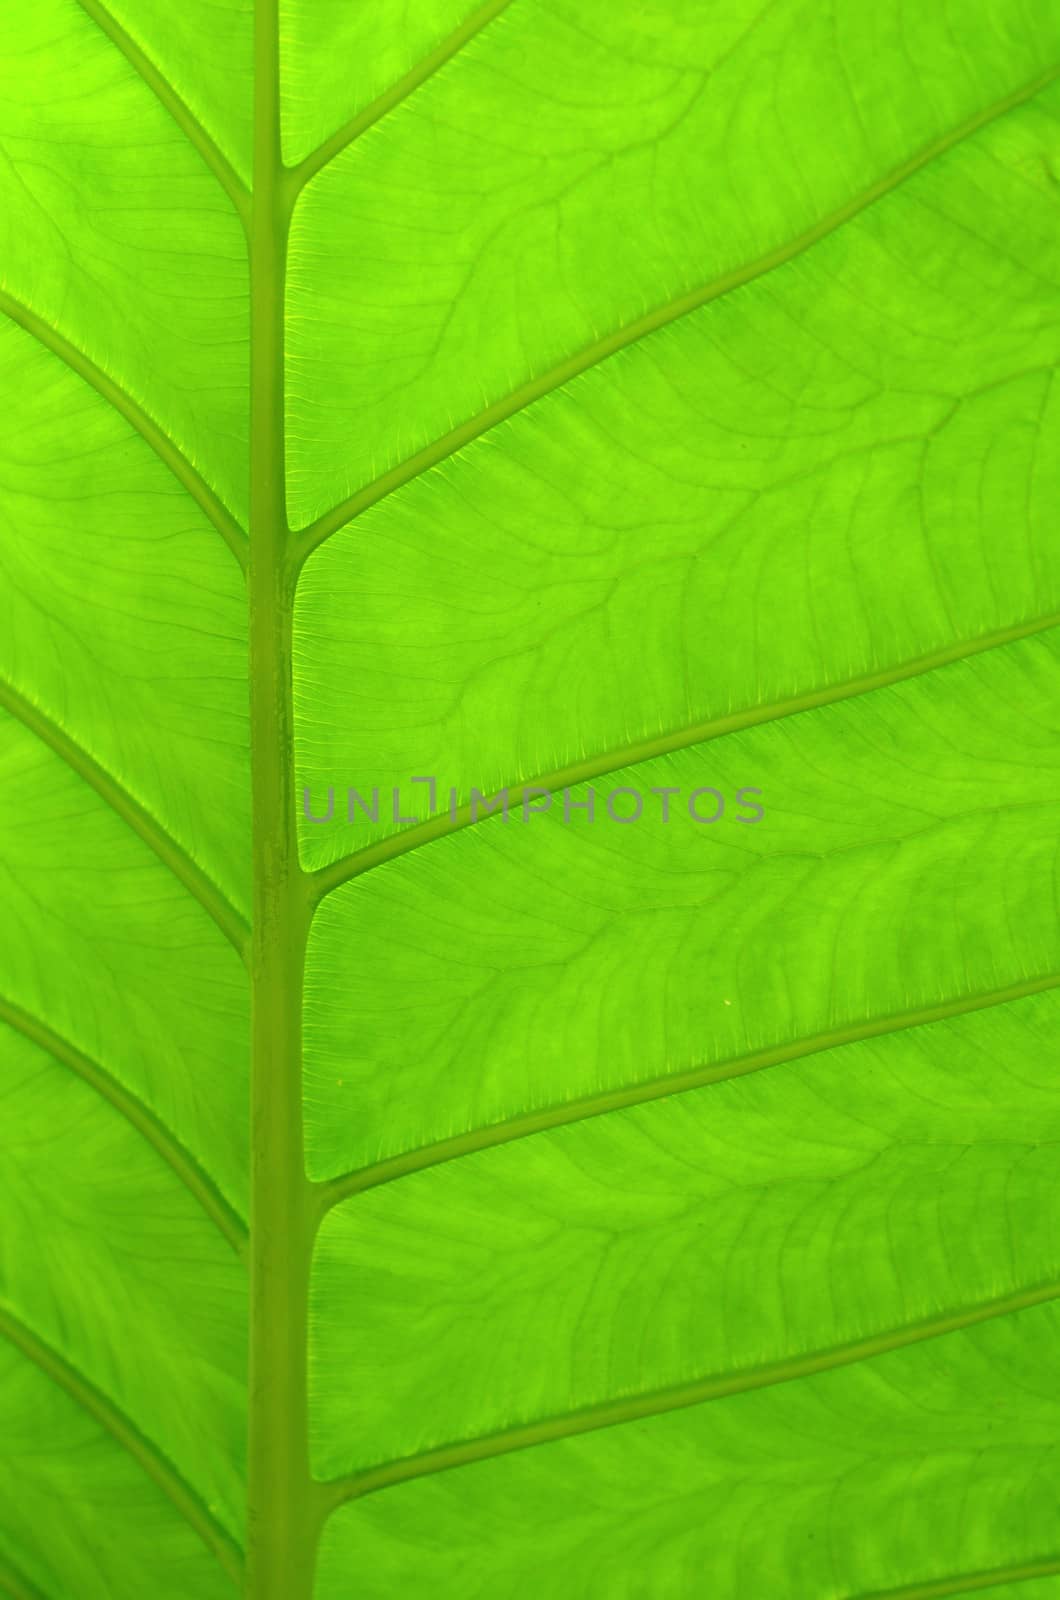 Tropical Leaf by mrdoomits